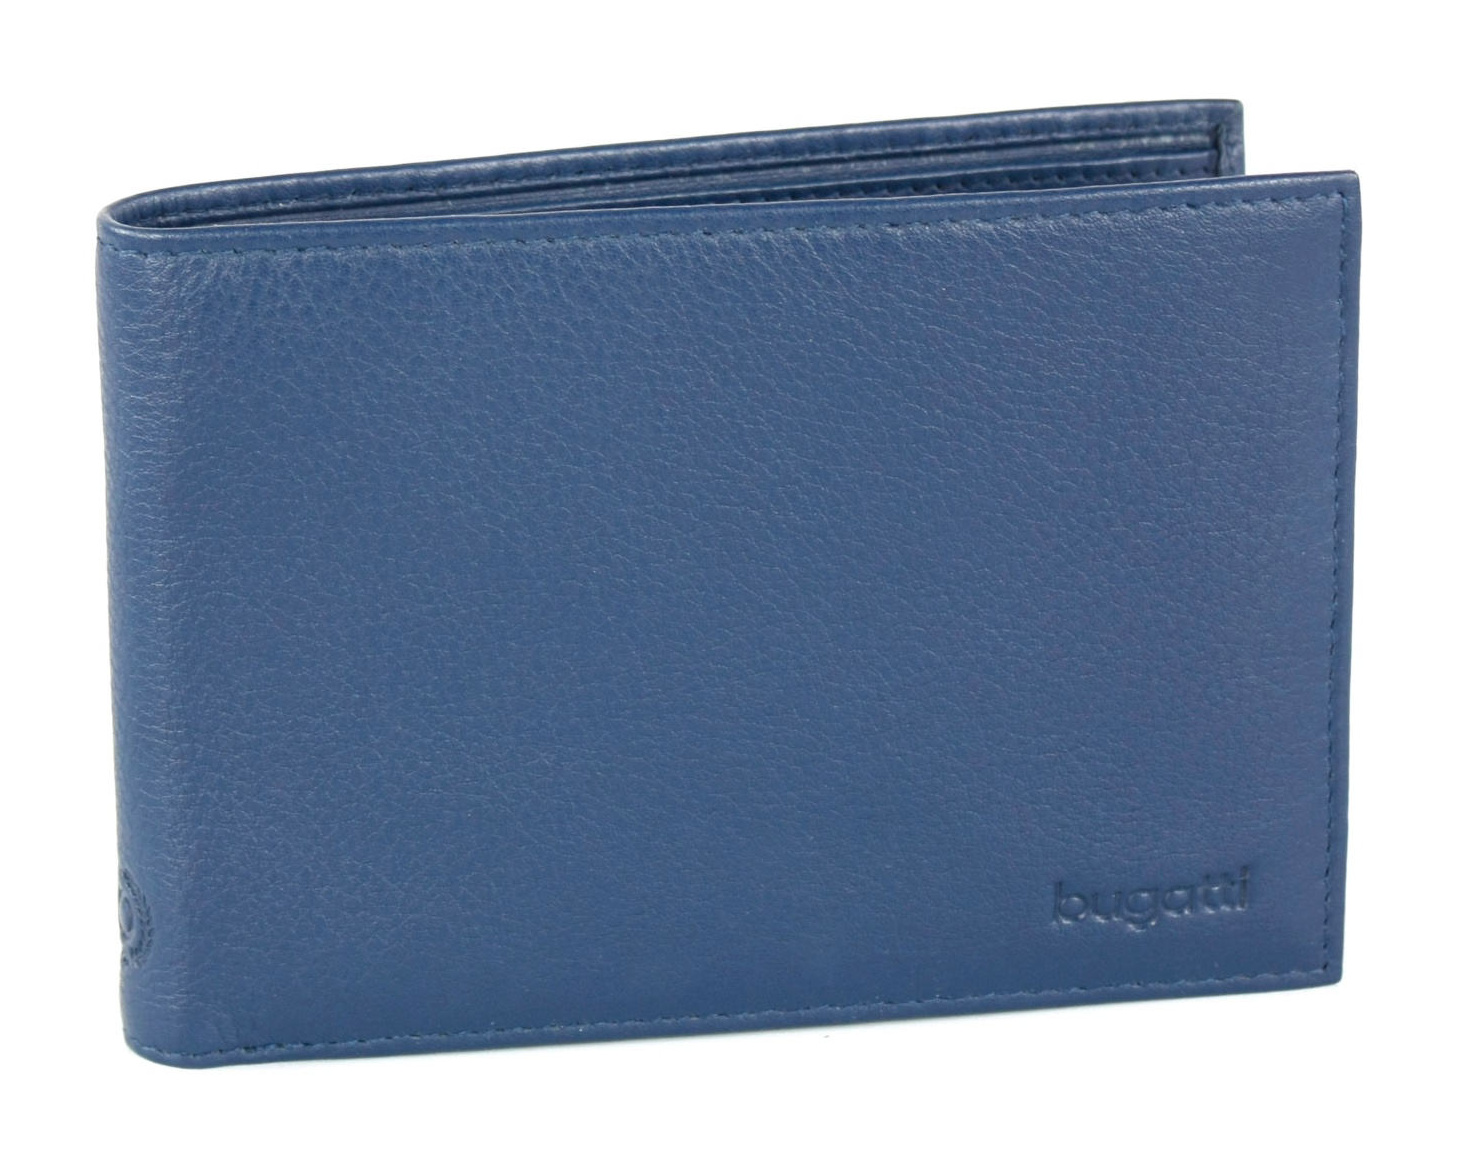 Pánská peněženka Bugatti Sempre flap 491177-05 modrá